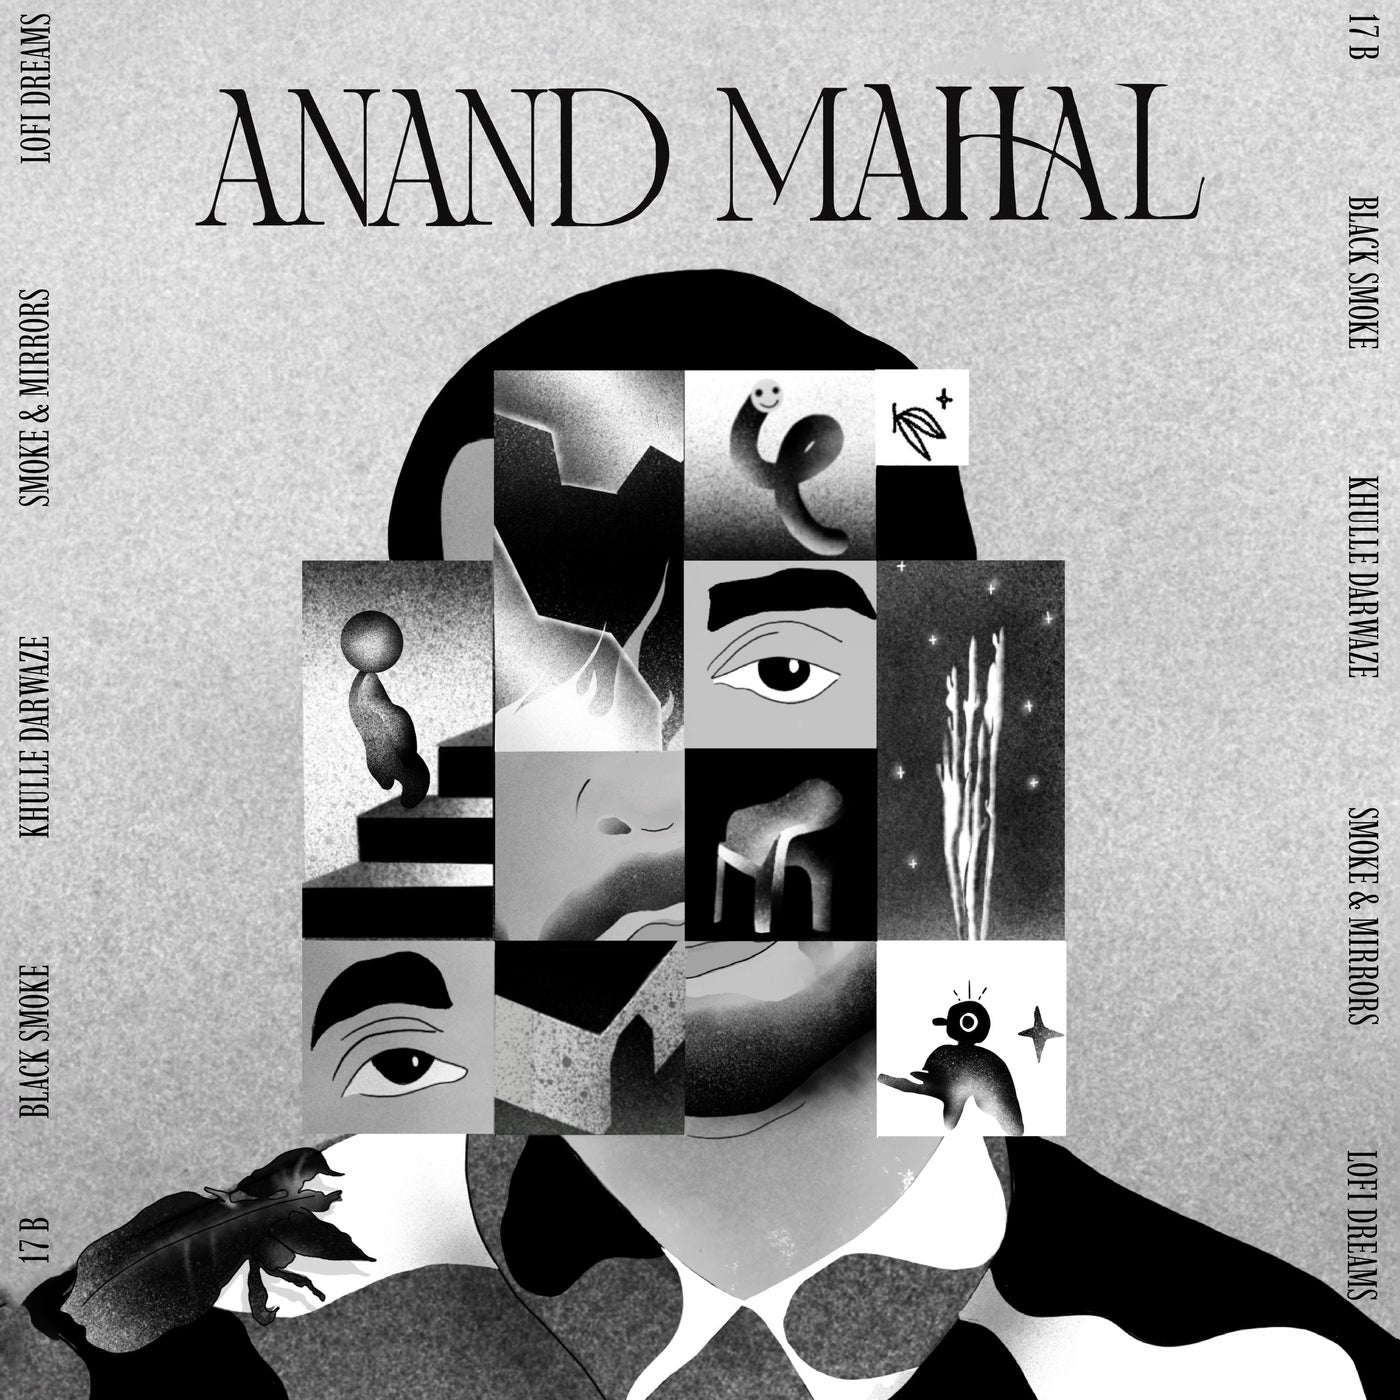 Anand Mahal